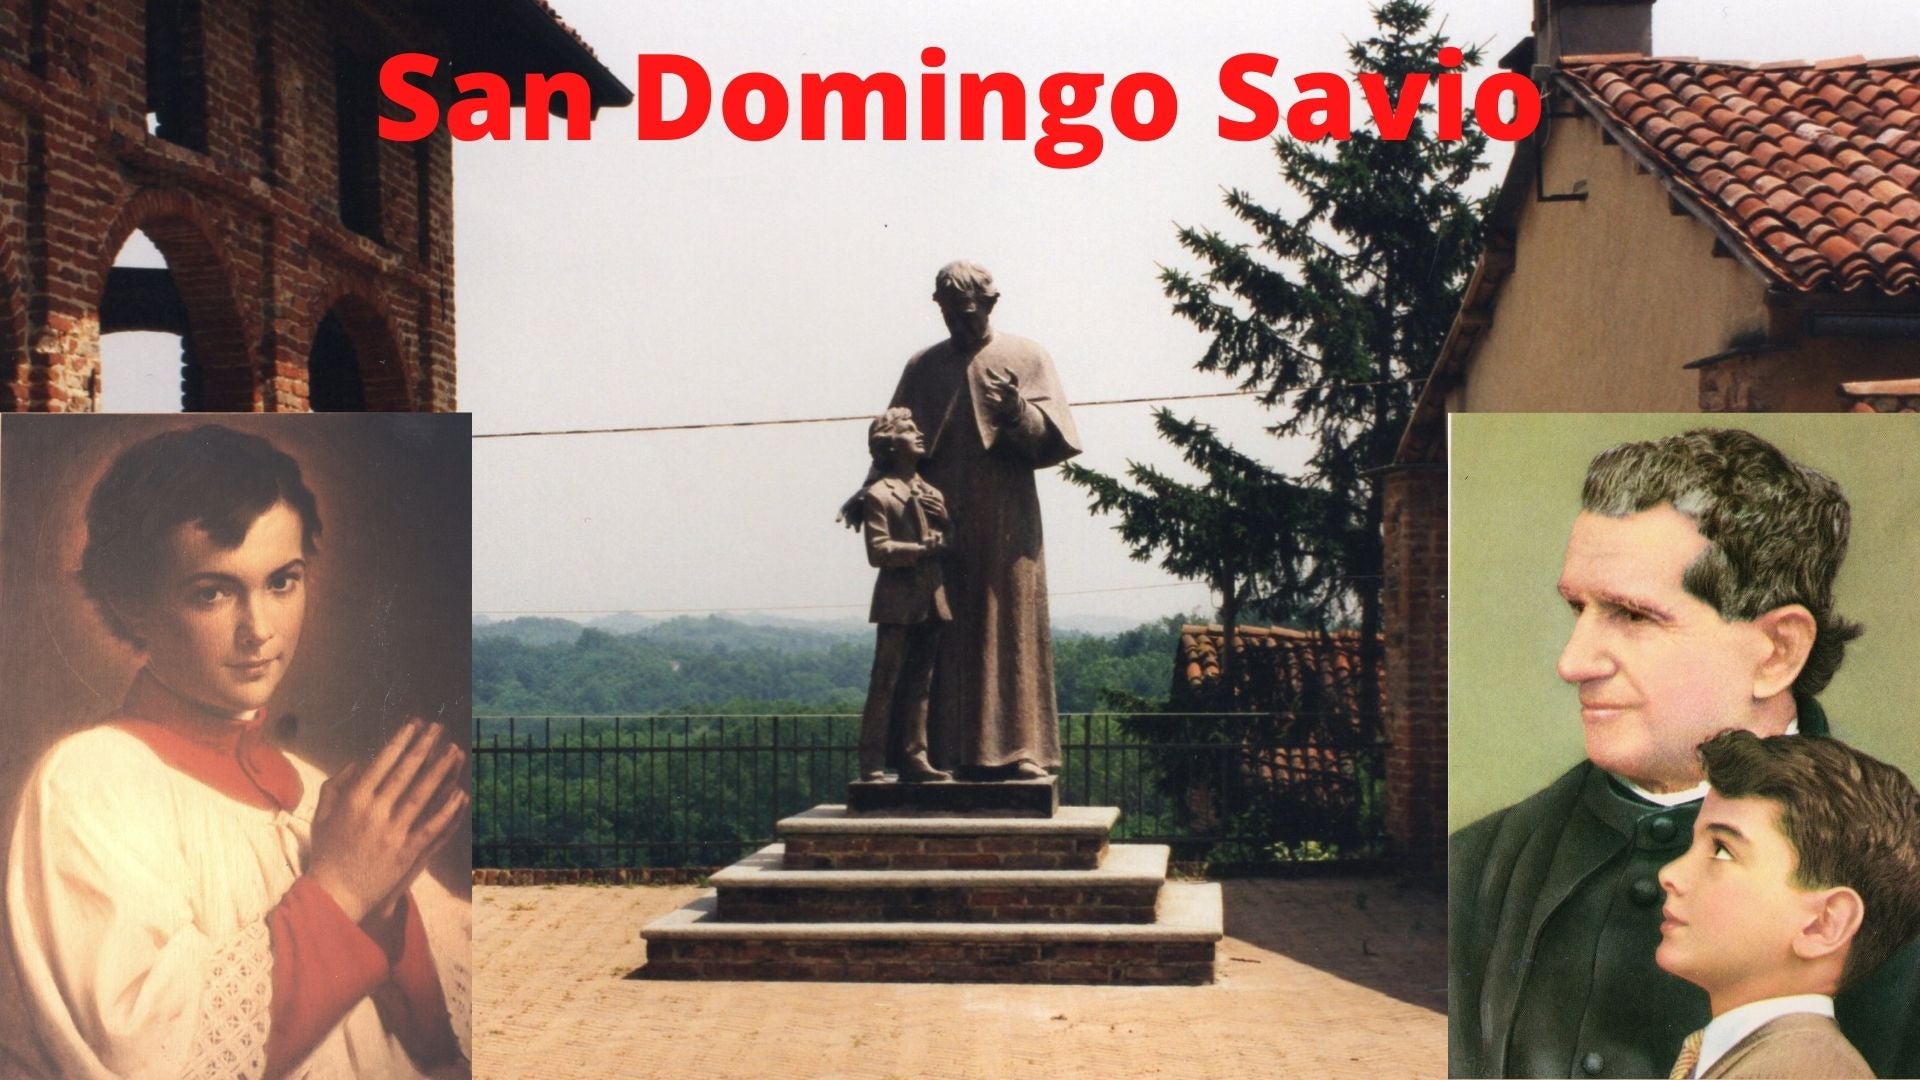 Santo Domingo Savio descarga de video - Bob and Penny Lord